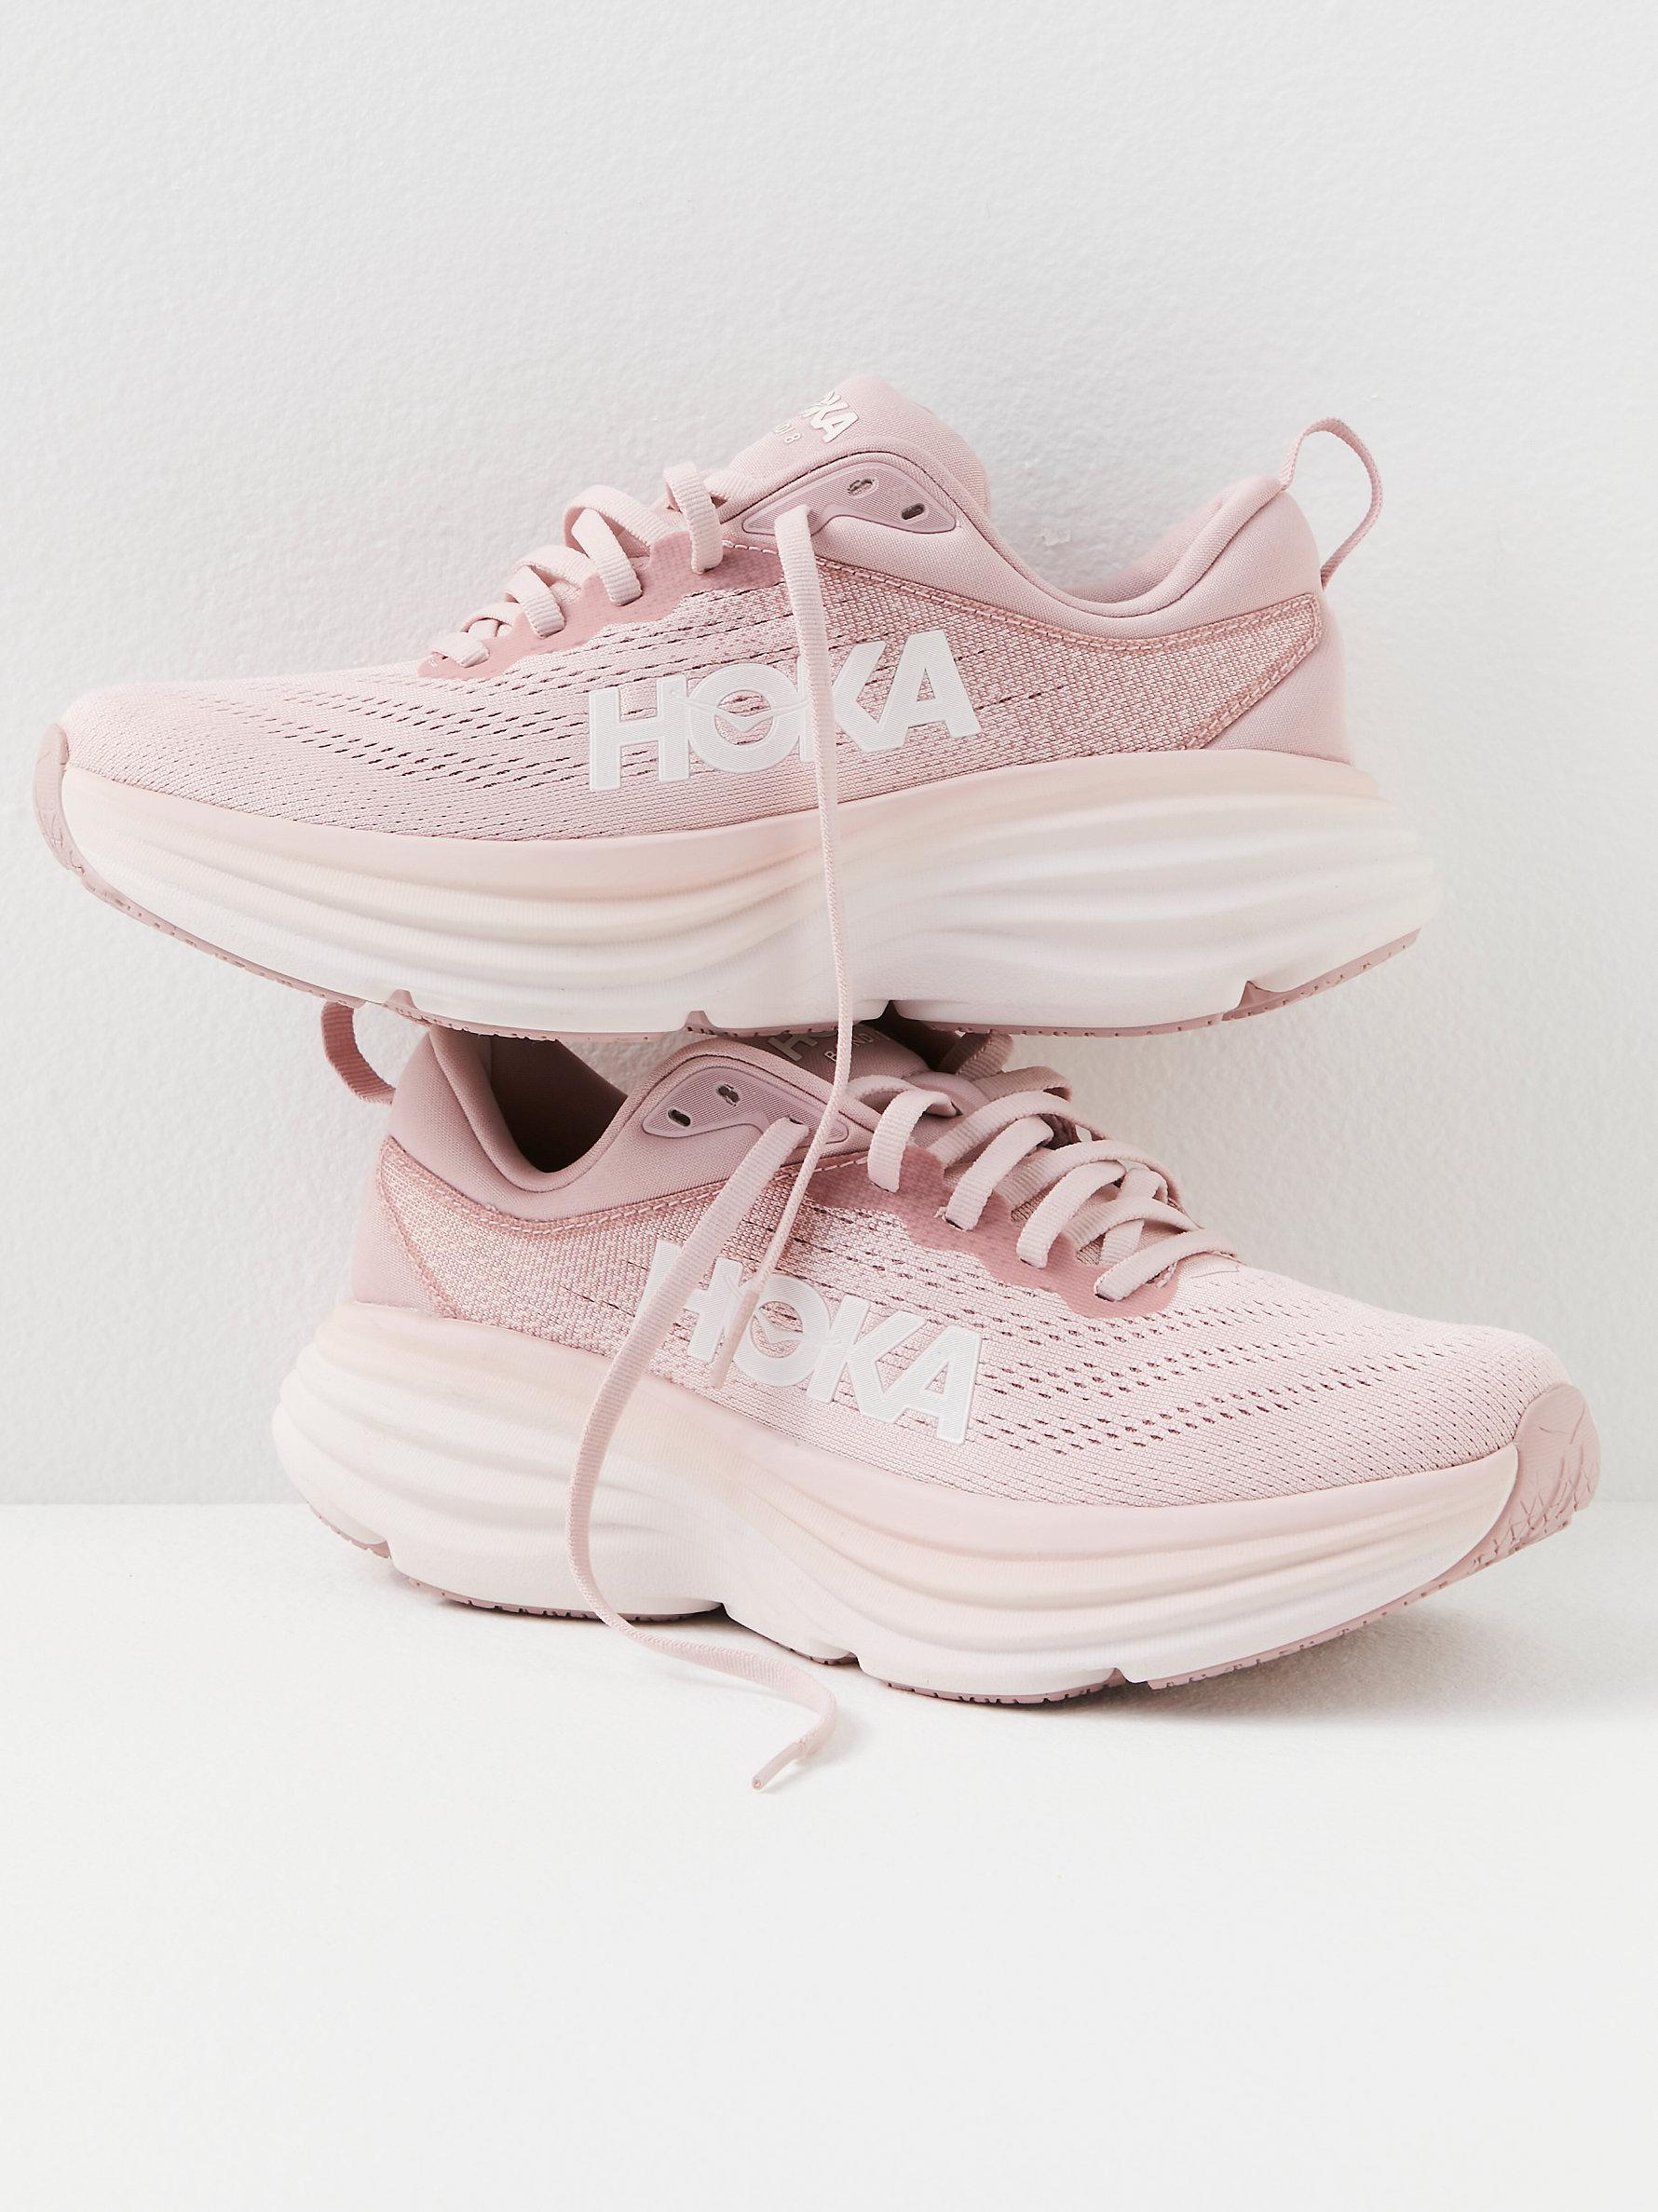 Free People Hoka Bondi 8 Sneakers in Pink | Lyst